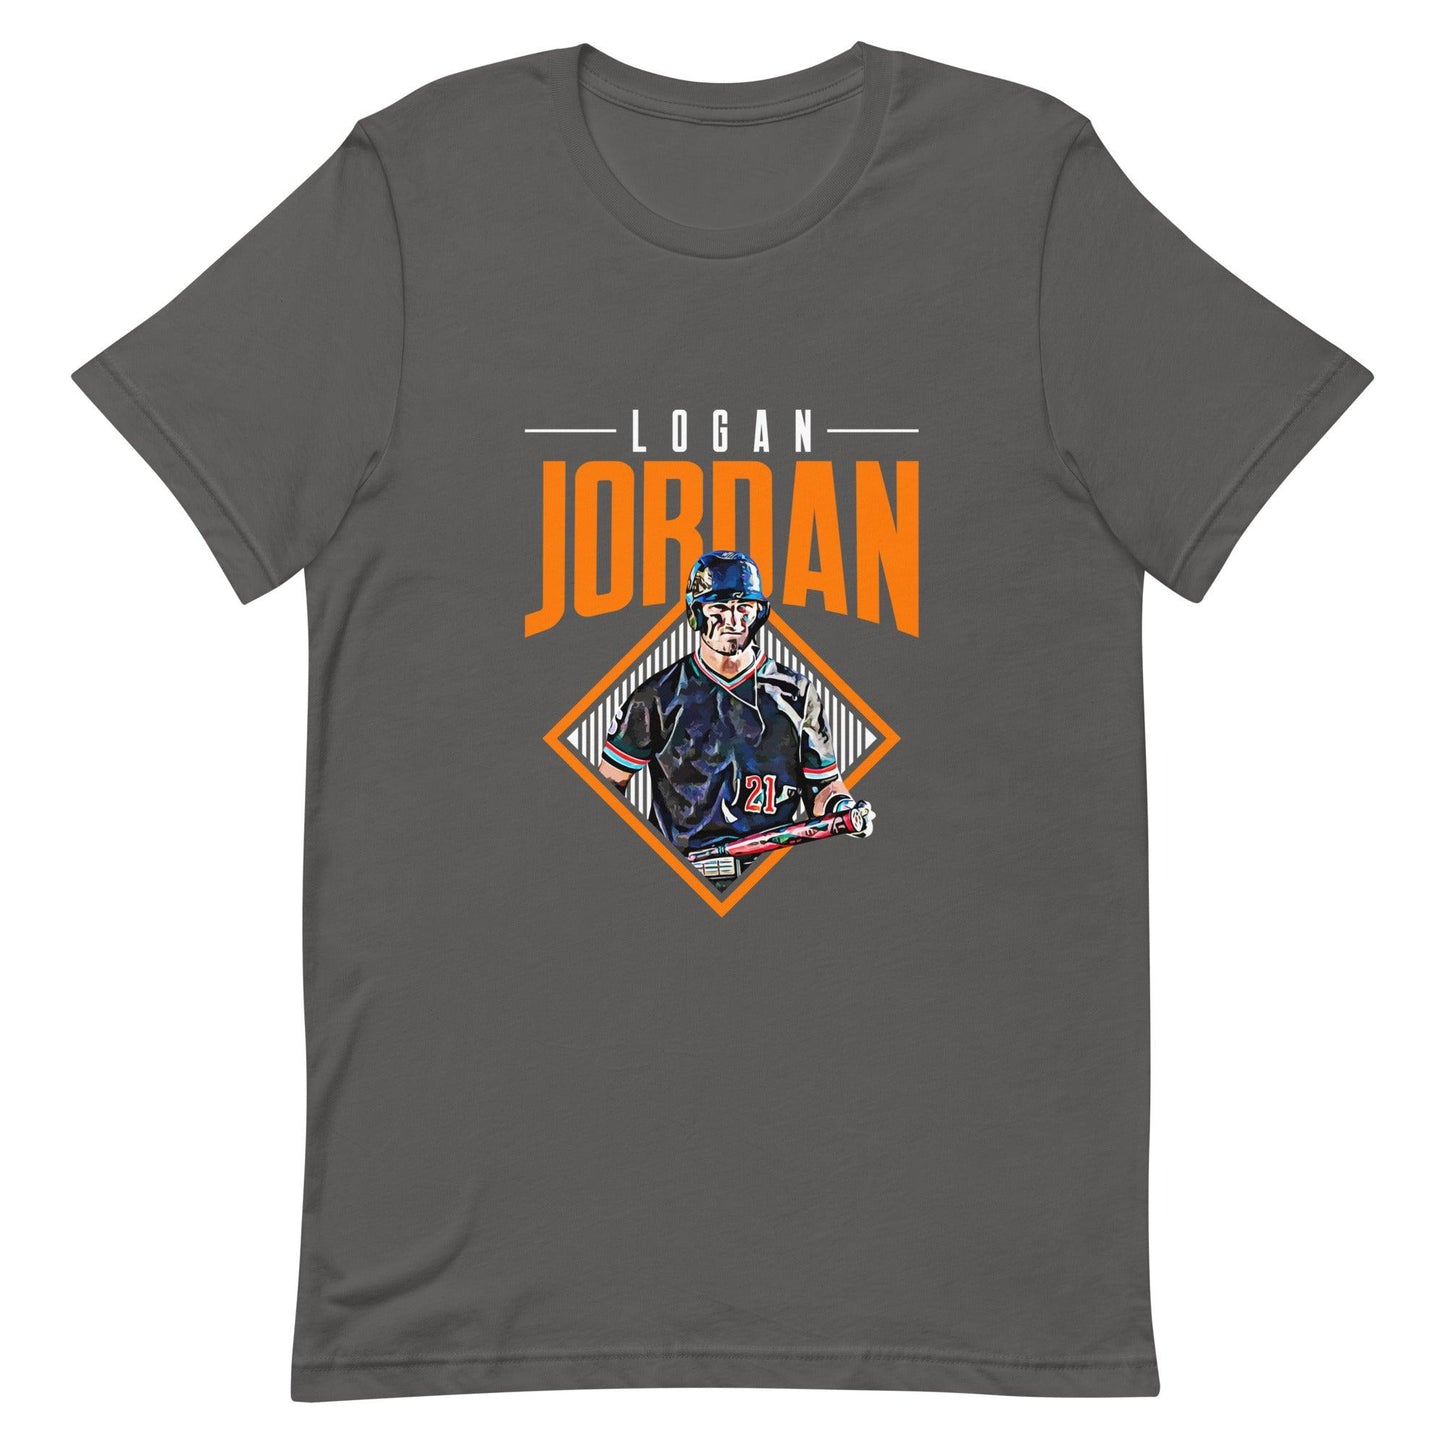 Logan Jordan "Grand Slam" t-shirt - Fan Arch